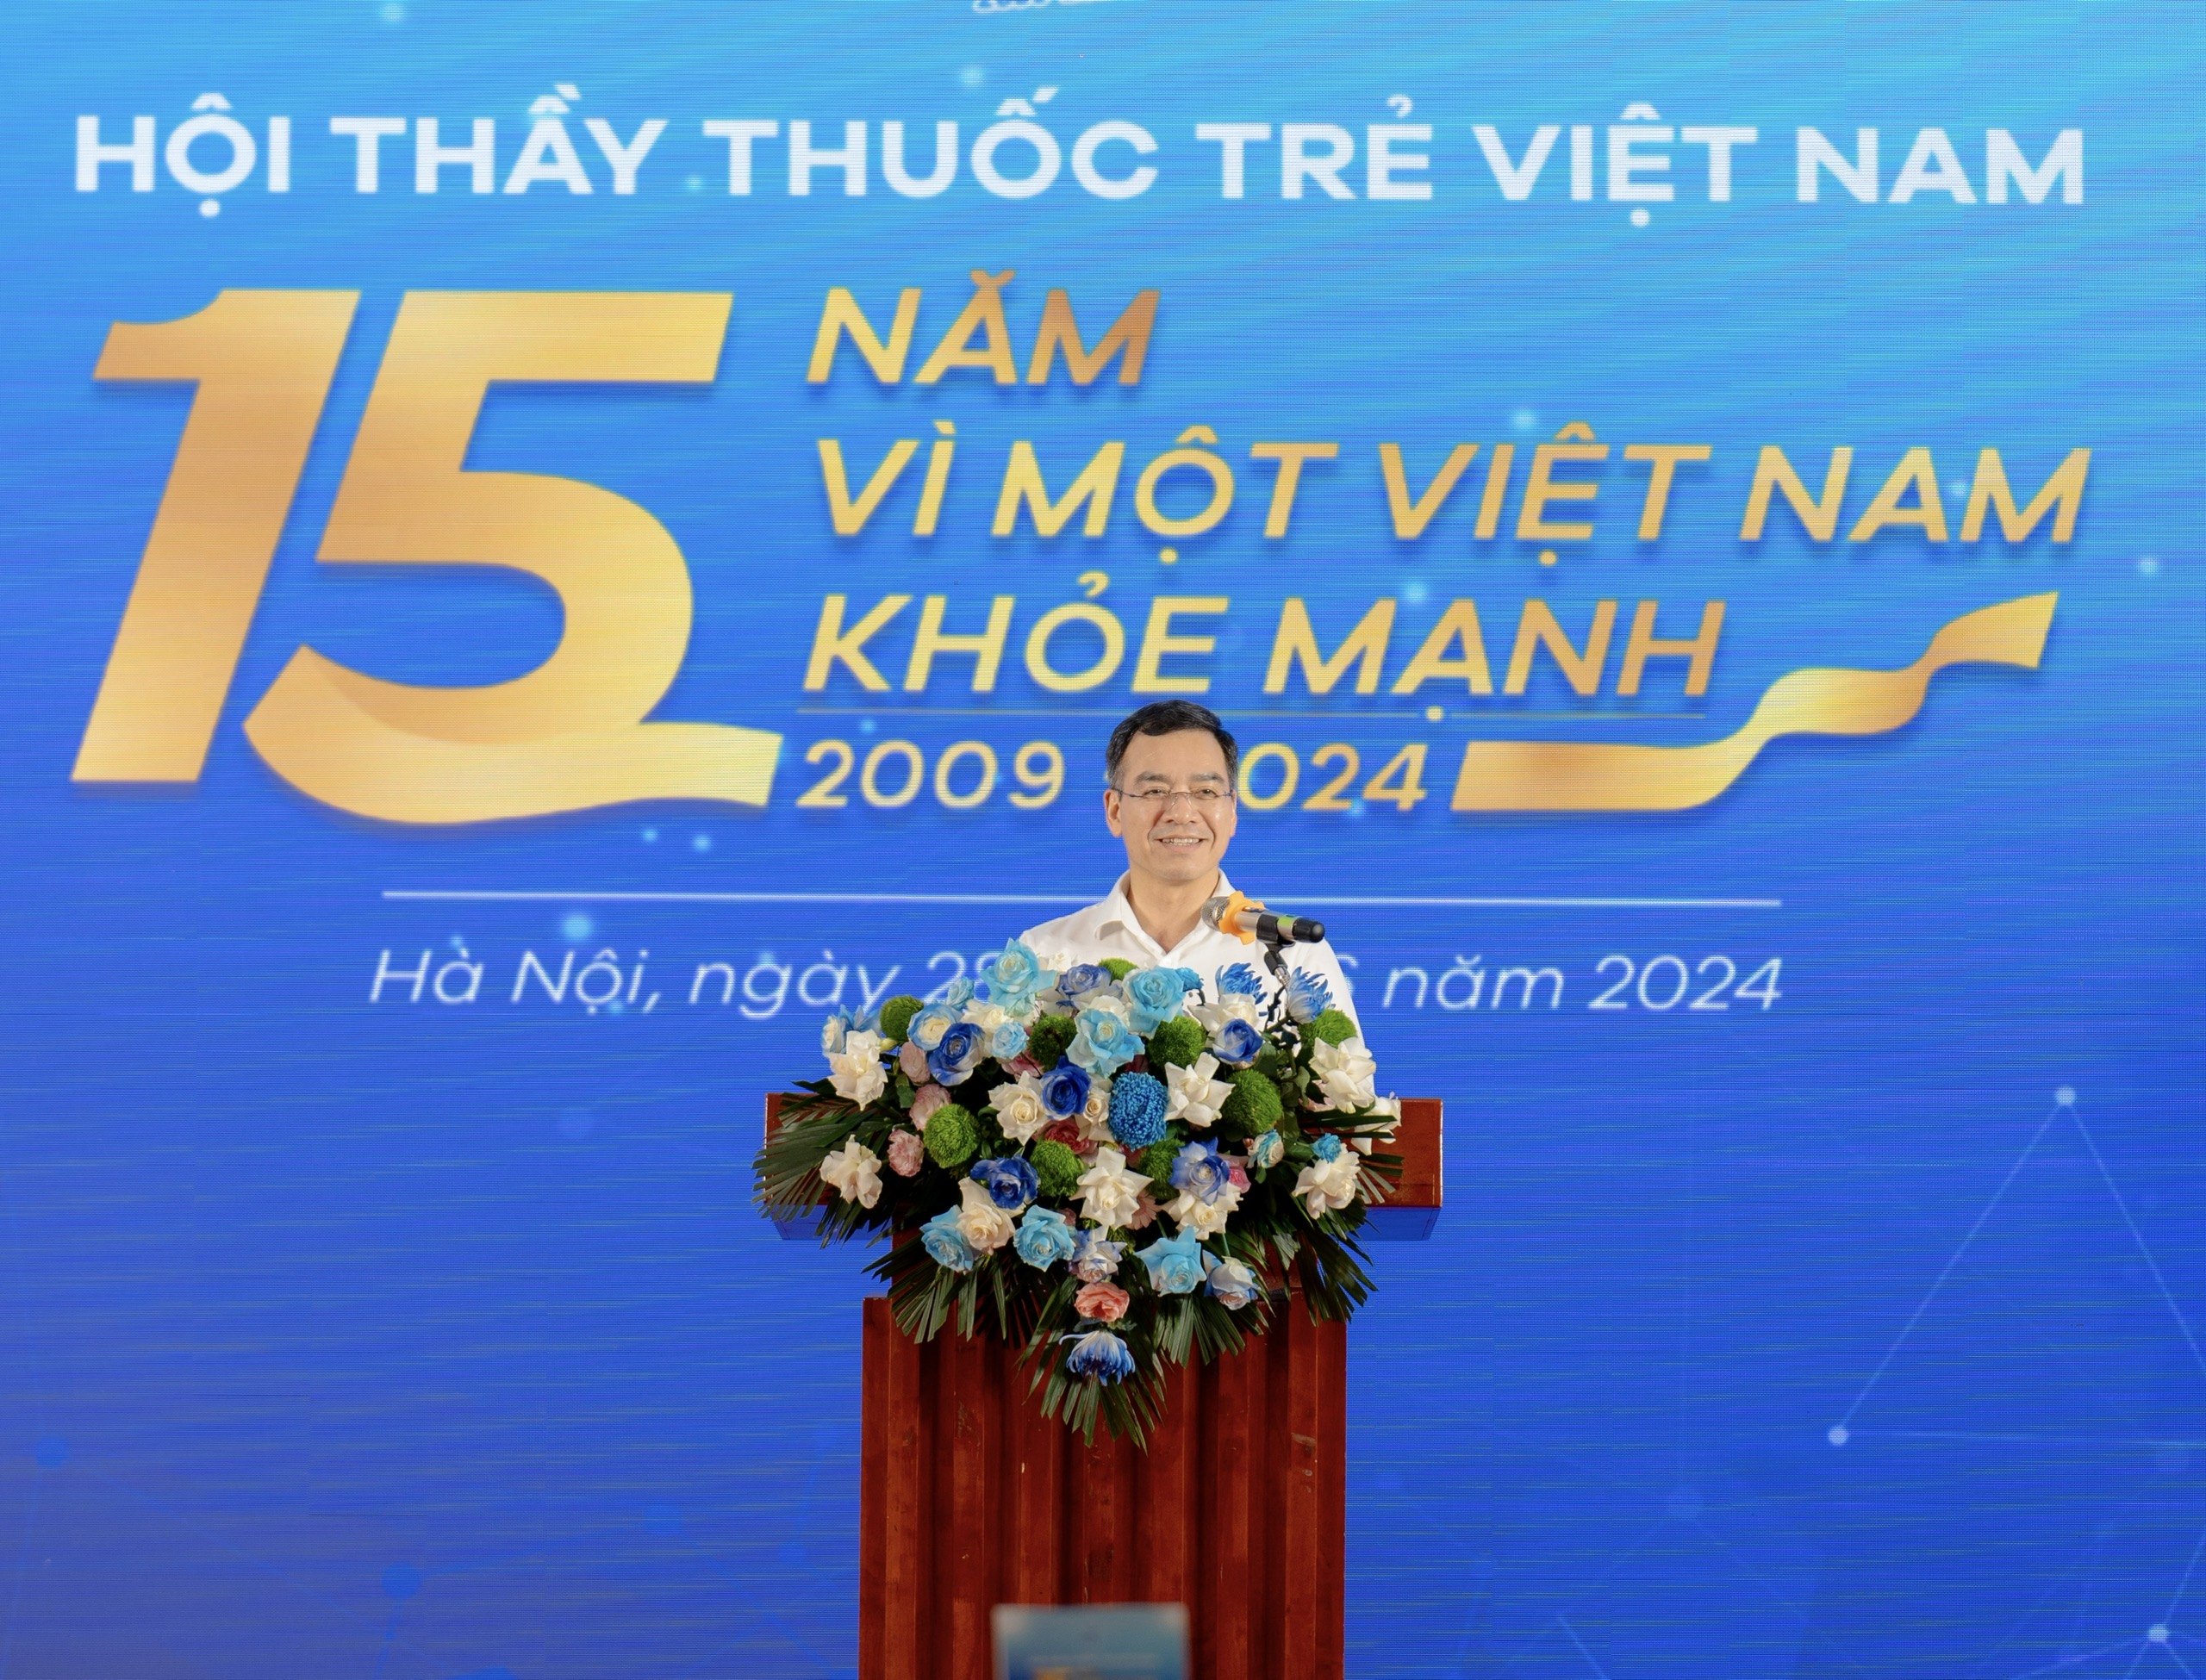 Thứ trưởng Bộ Y tế: Hội Thầy thuốc trẻ Việt Nam có nhiều đóng góp trong chăm sóc sức khỏe nhân dân- Ảnh 3.